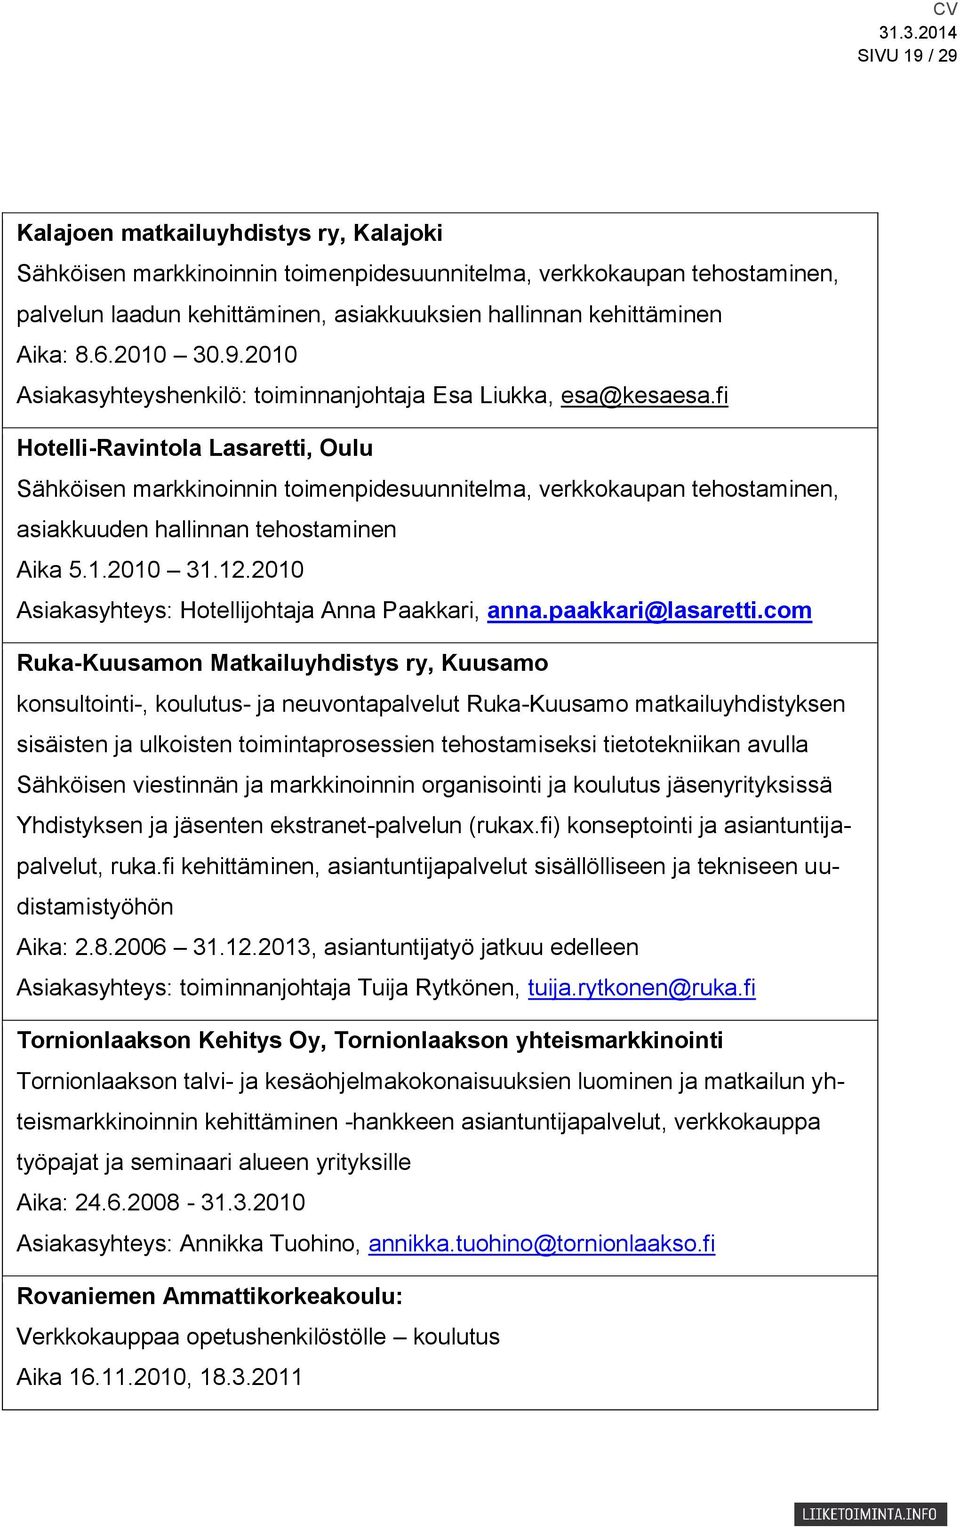 fi Hotelli-Ravintola Lasaretti, Oulu Sähköisen markkinoinnin toimenpidesuunnitelma, verkkokaupan tehostaminen, asiakkuuden hallinnan tehostaminen Aika 5.1.2010 31.12.